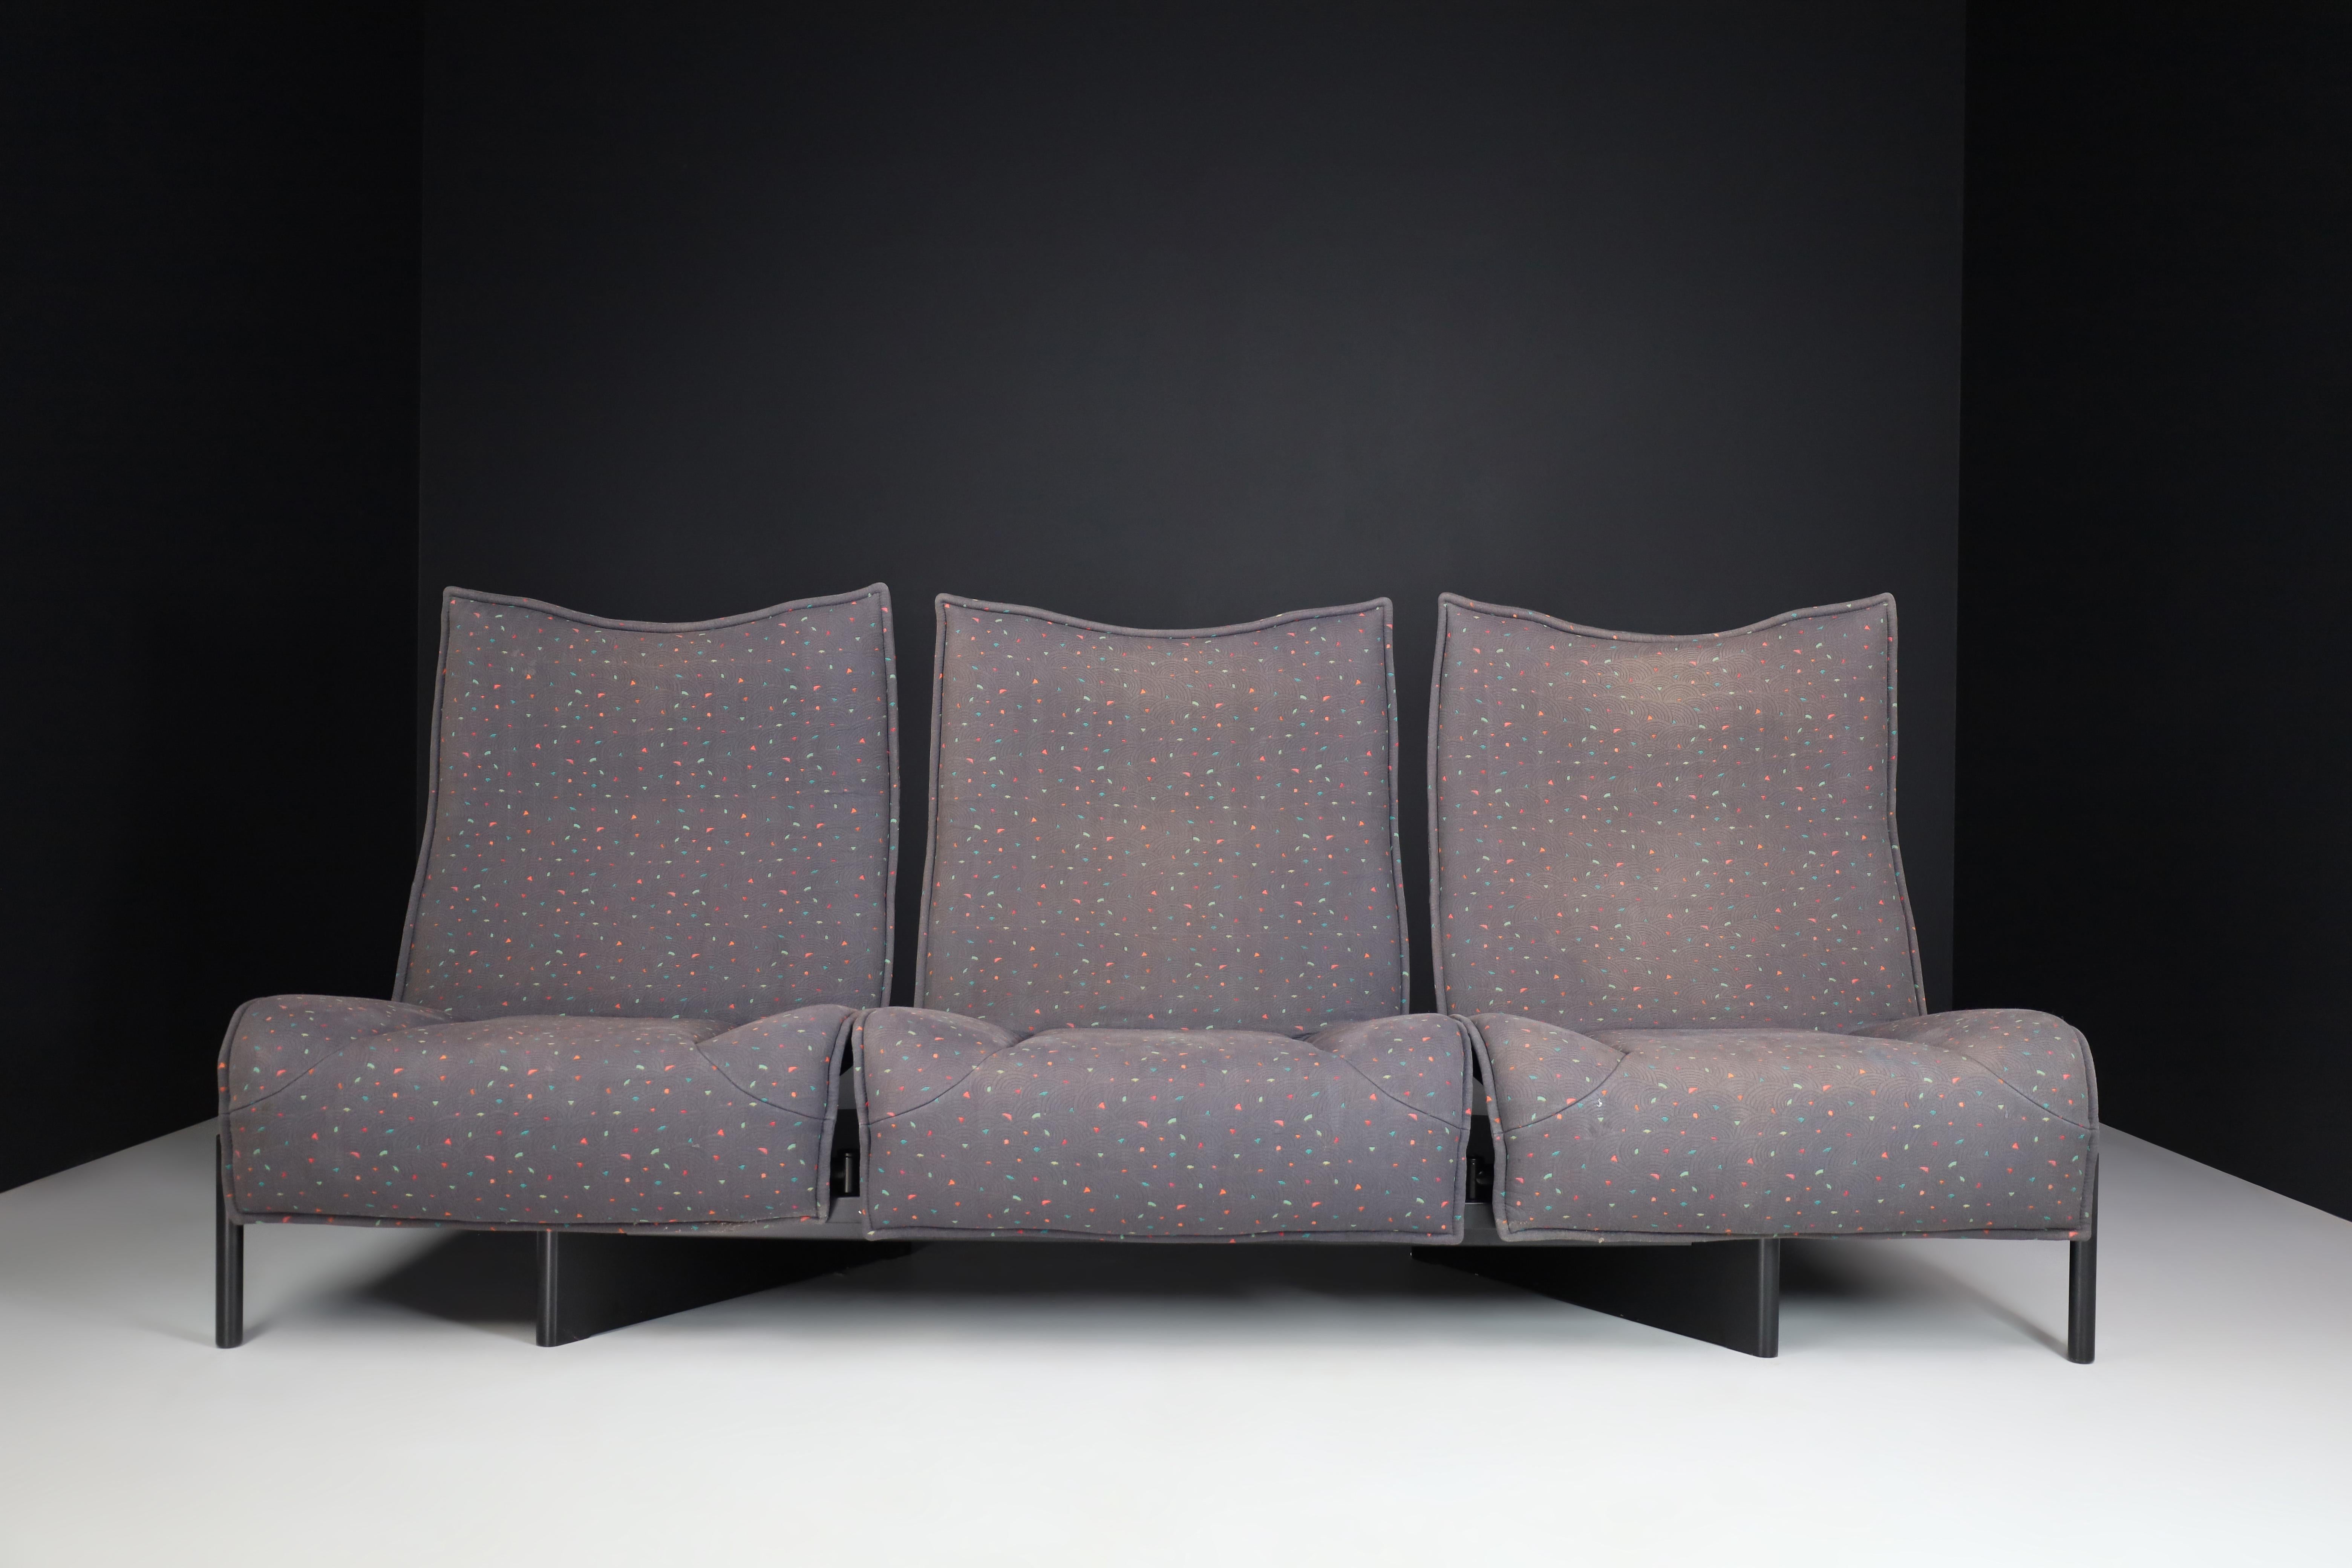 Dieses mehrfarbige und verstellbare Sofa wurde von Vico Magistretti für Cassina um 1980 herum entworfen. Dieses elegante und begehrte italienische Design zeichnet sich durch mit Stoff bezogene Sitze aus, die in der Position und die Rückenlehnen in